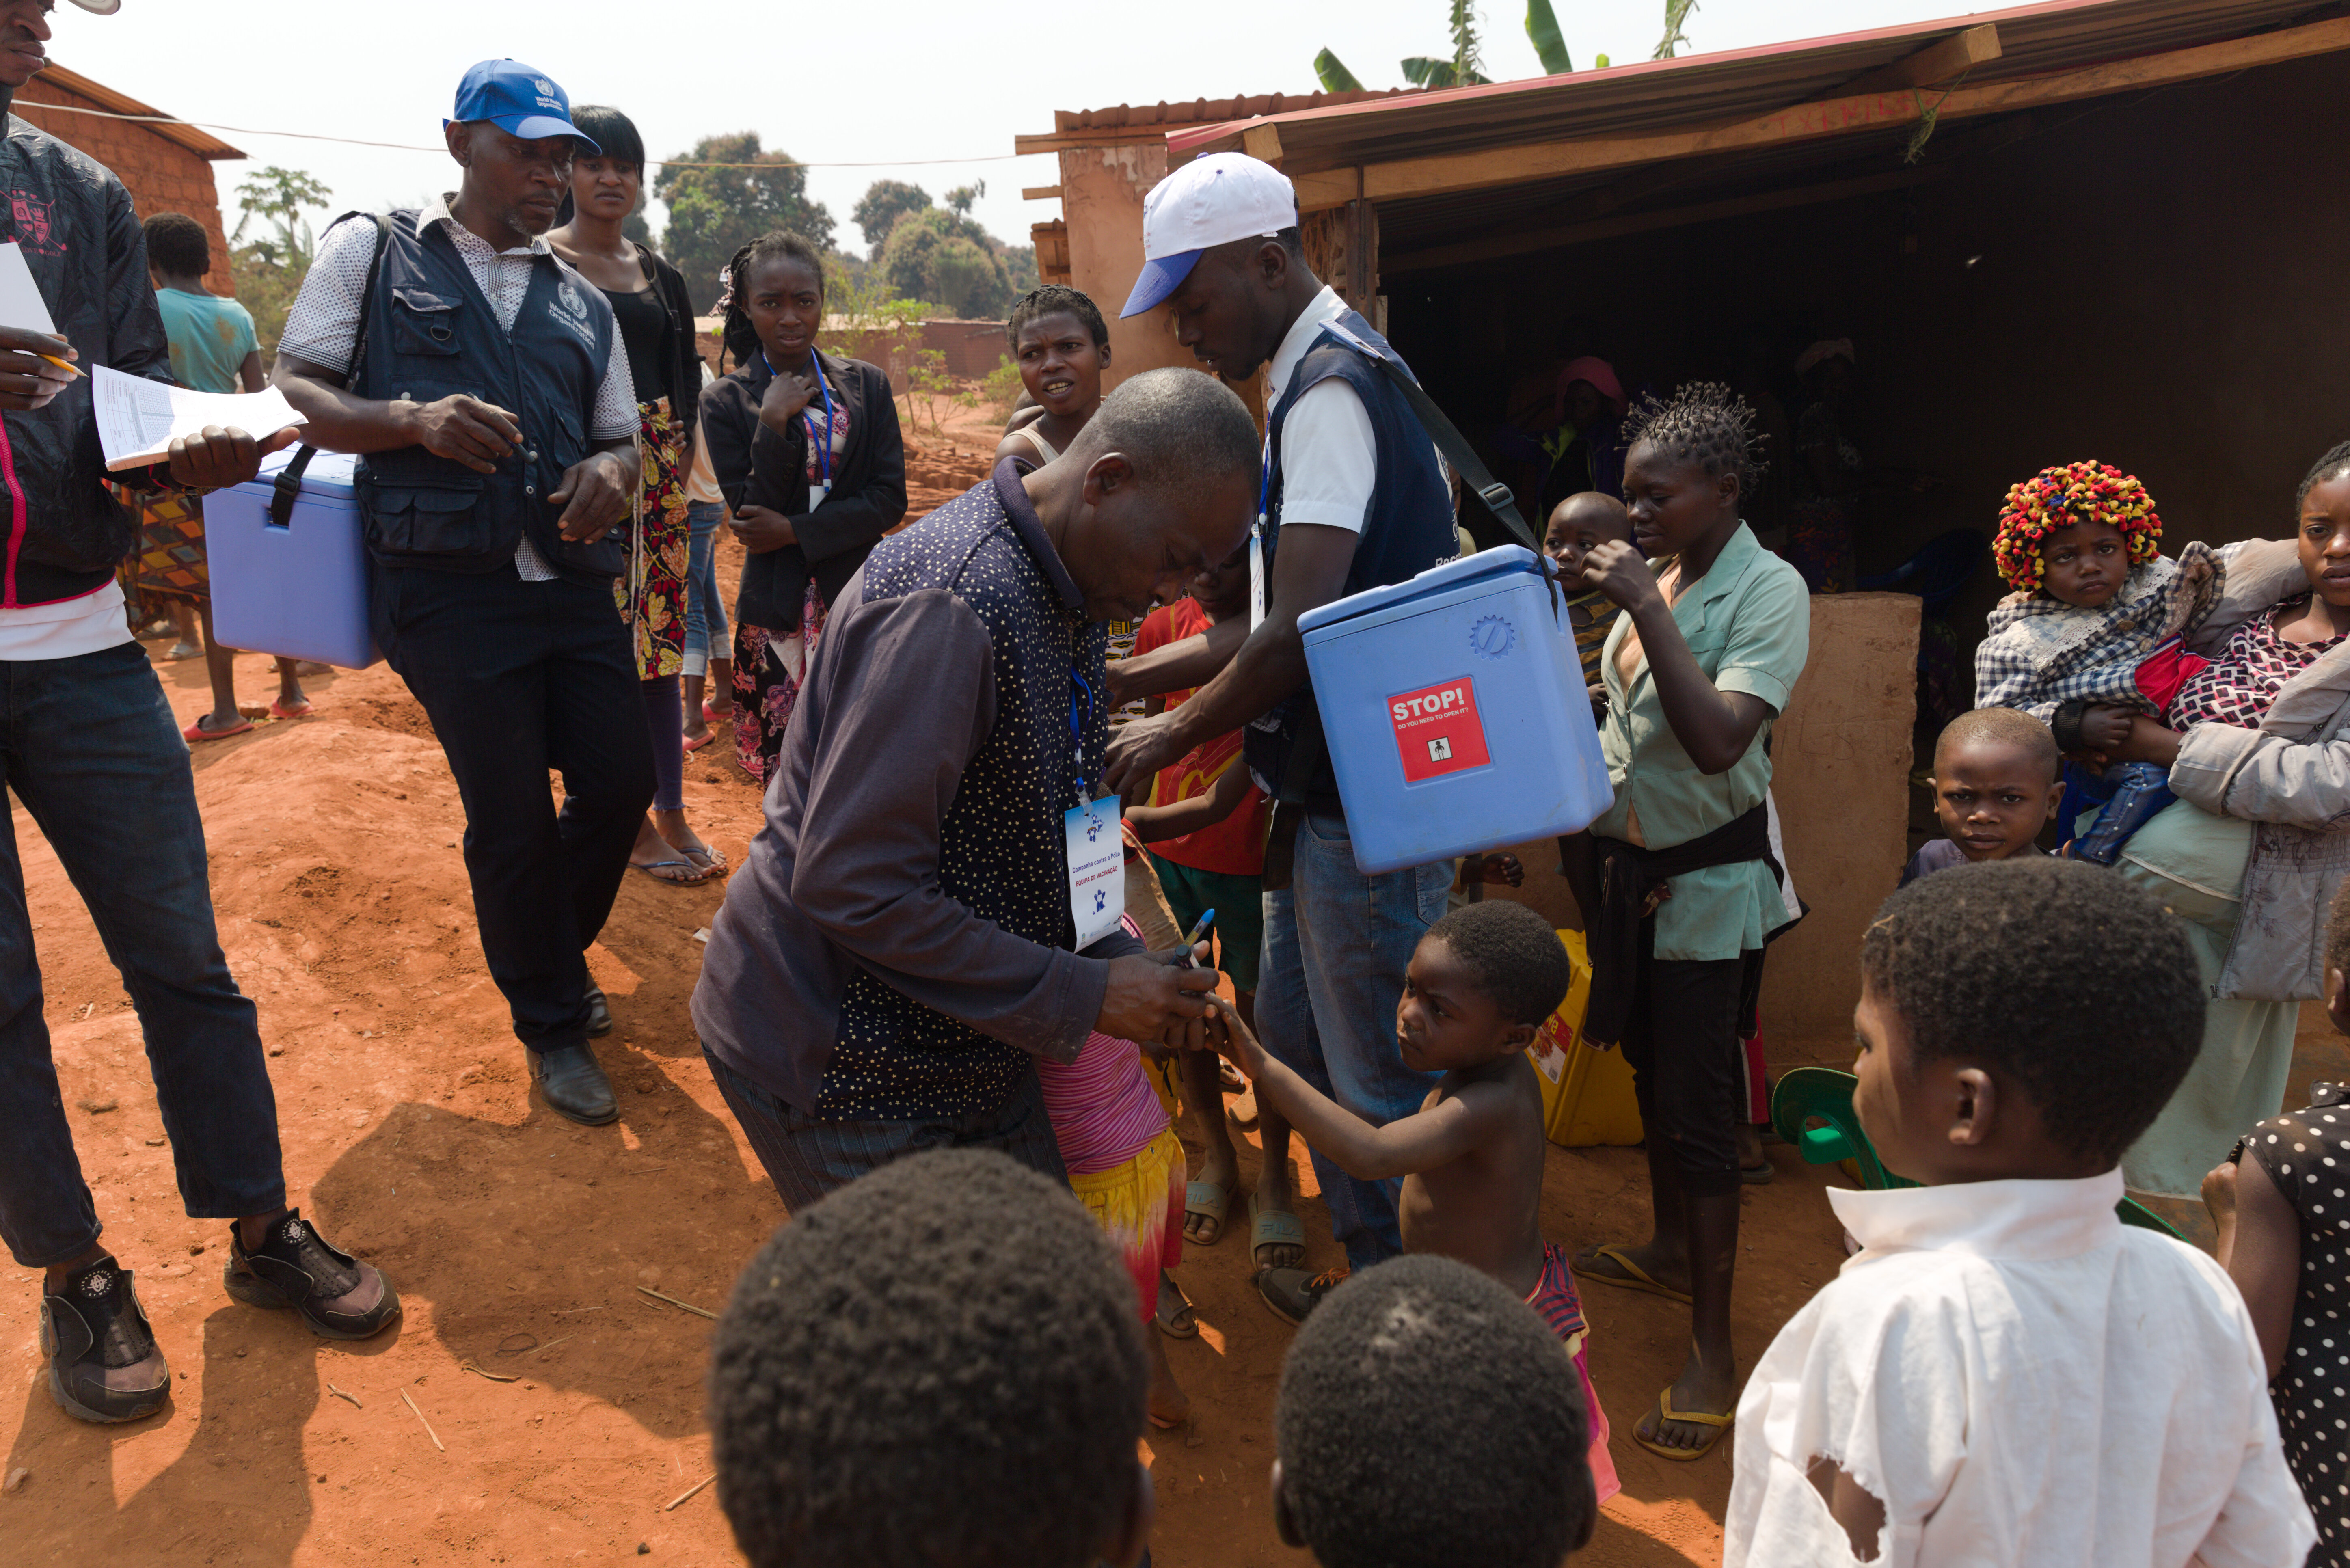 During polio vaccination campaign in Lunda Norte Angola